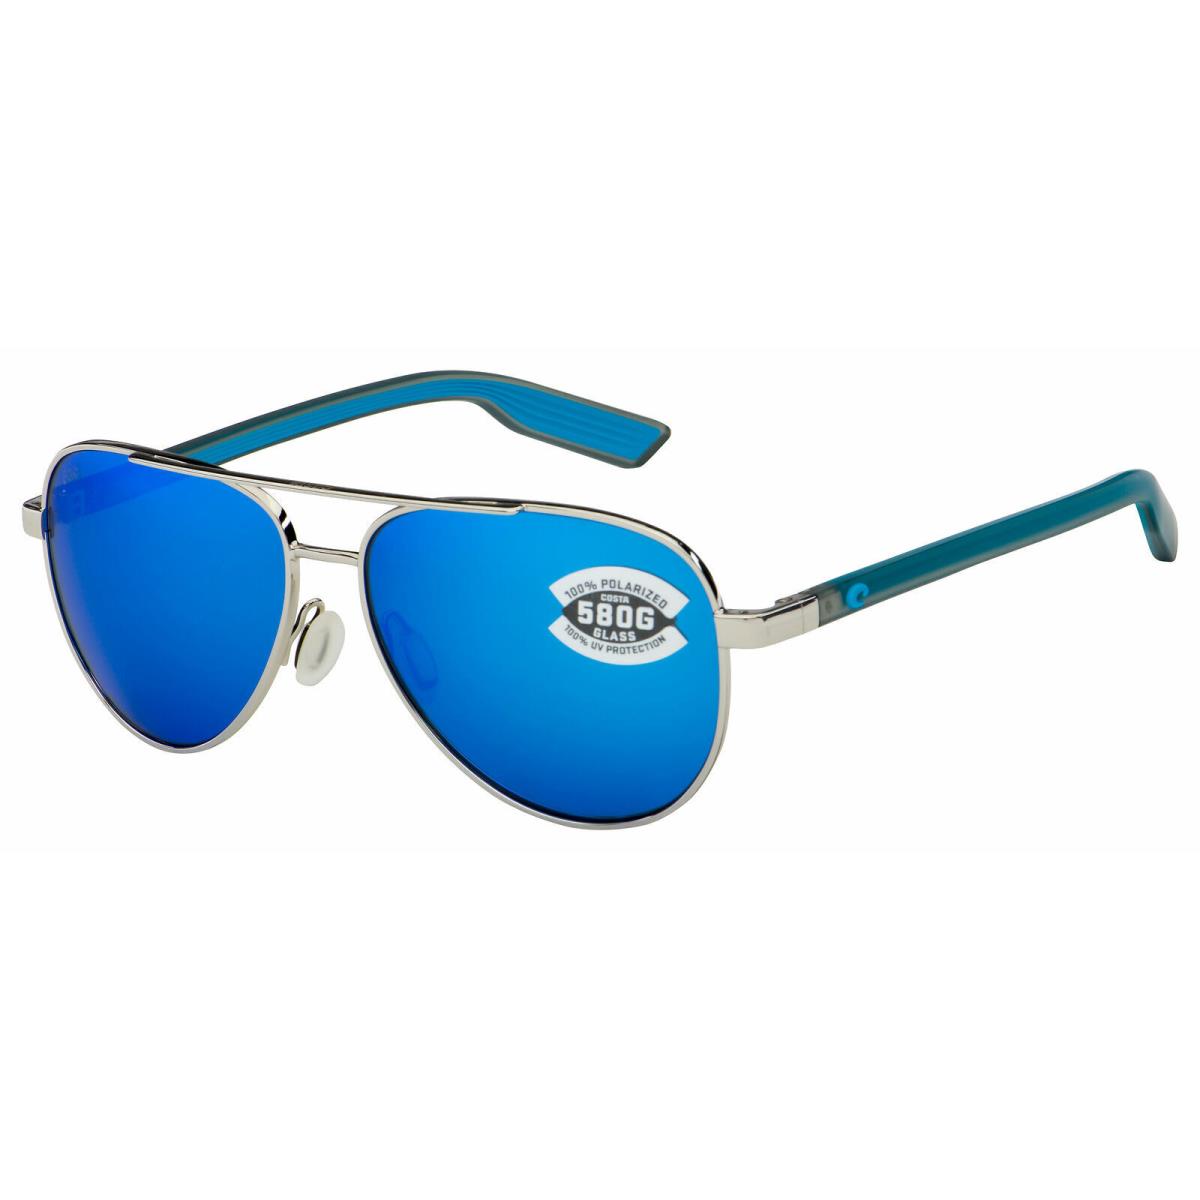 Costa Del Mar Peli Sunglasses PEL288OBMGLP Silver Blue Mirror Polarized 580G